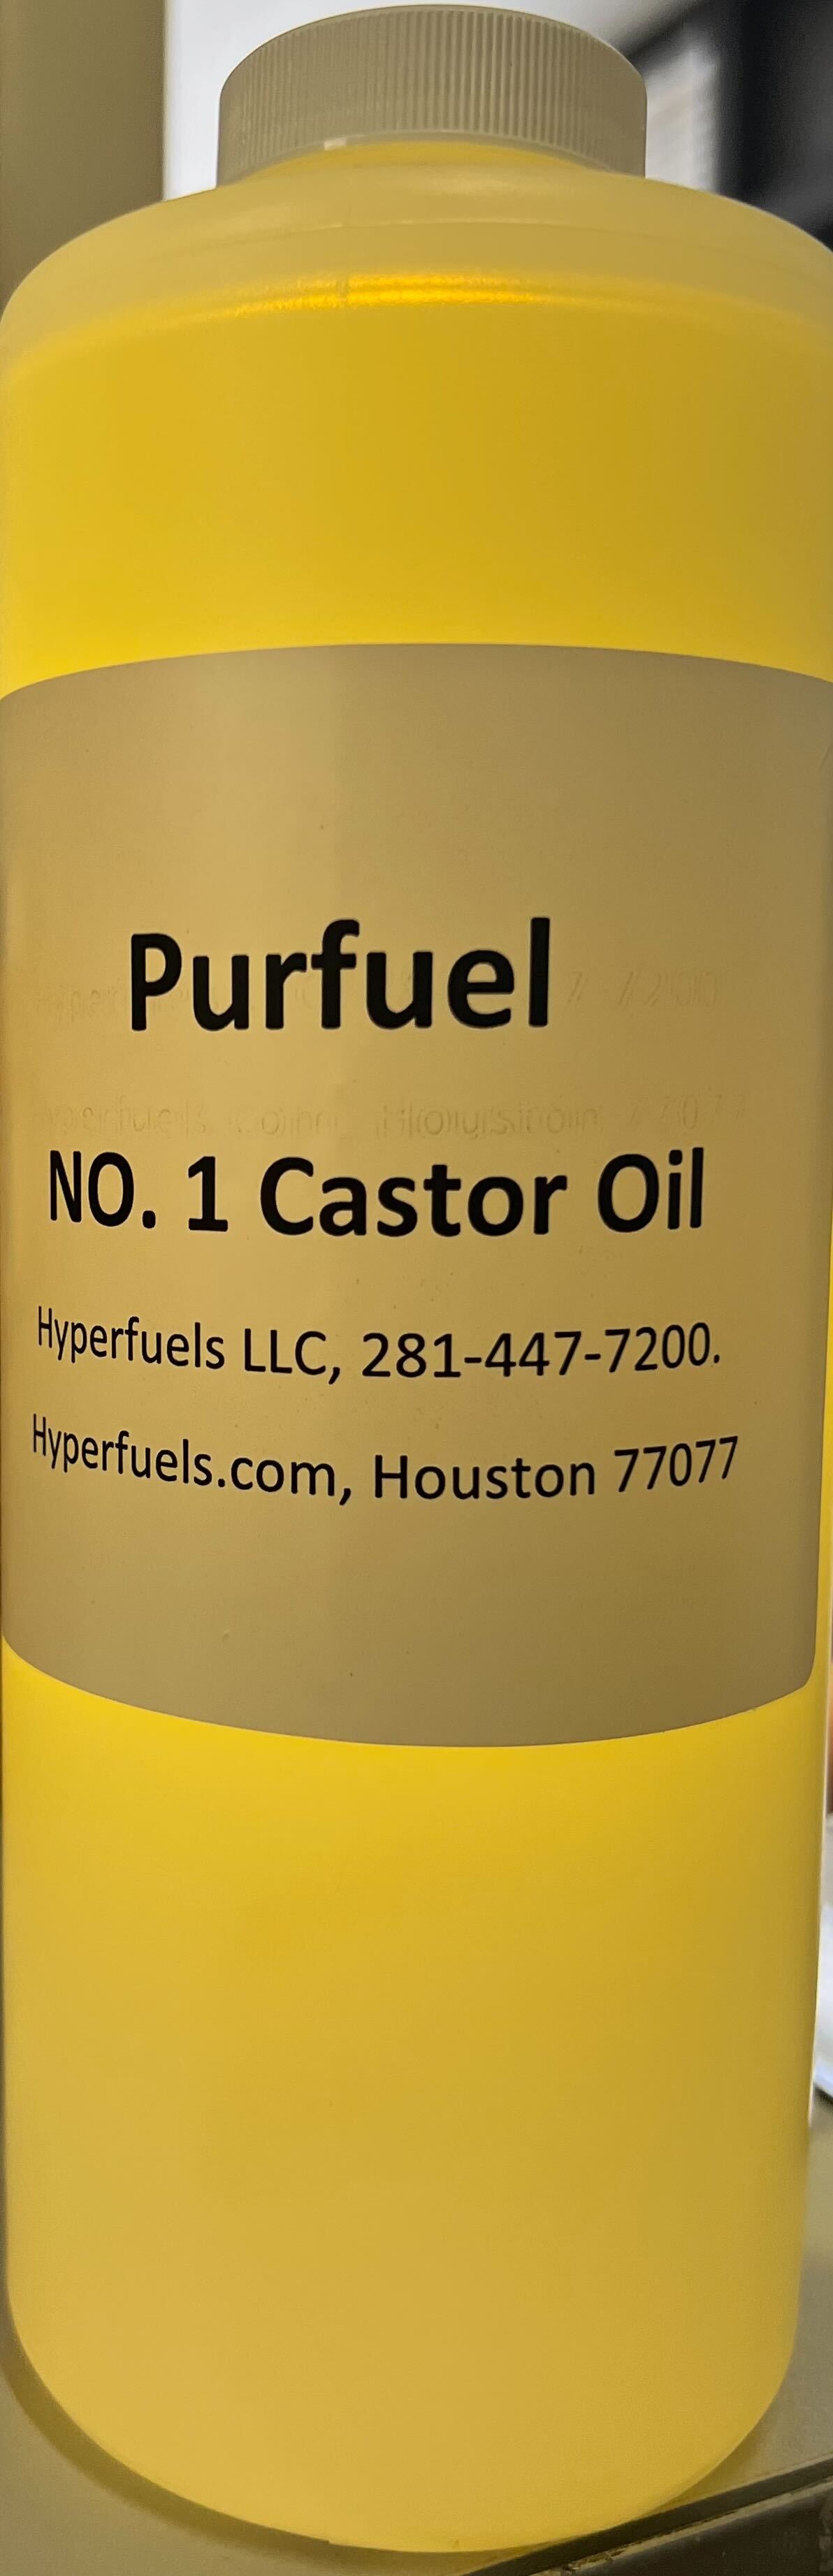 Purfuels Castor Oil (1 Quart)